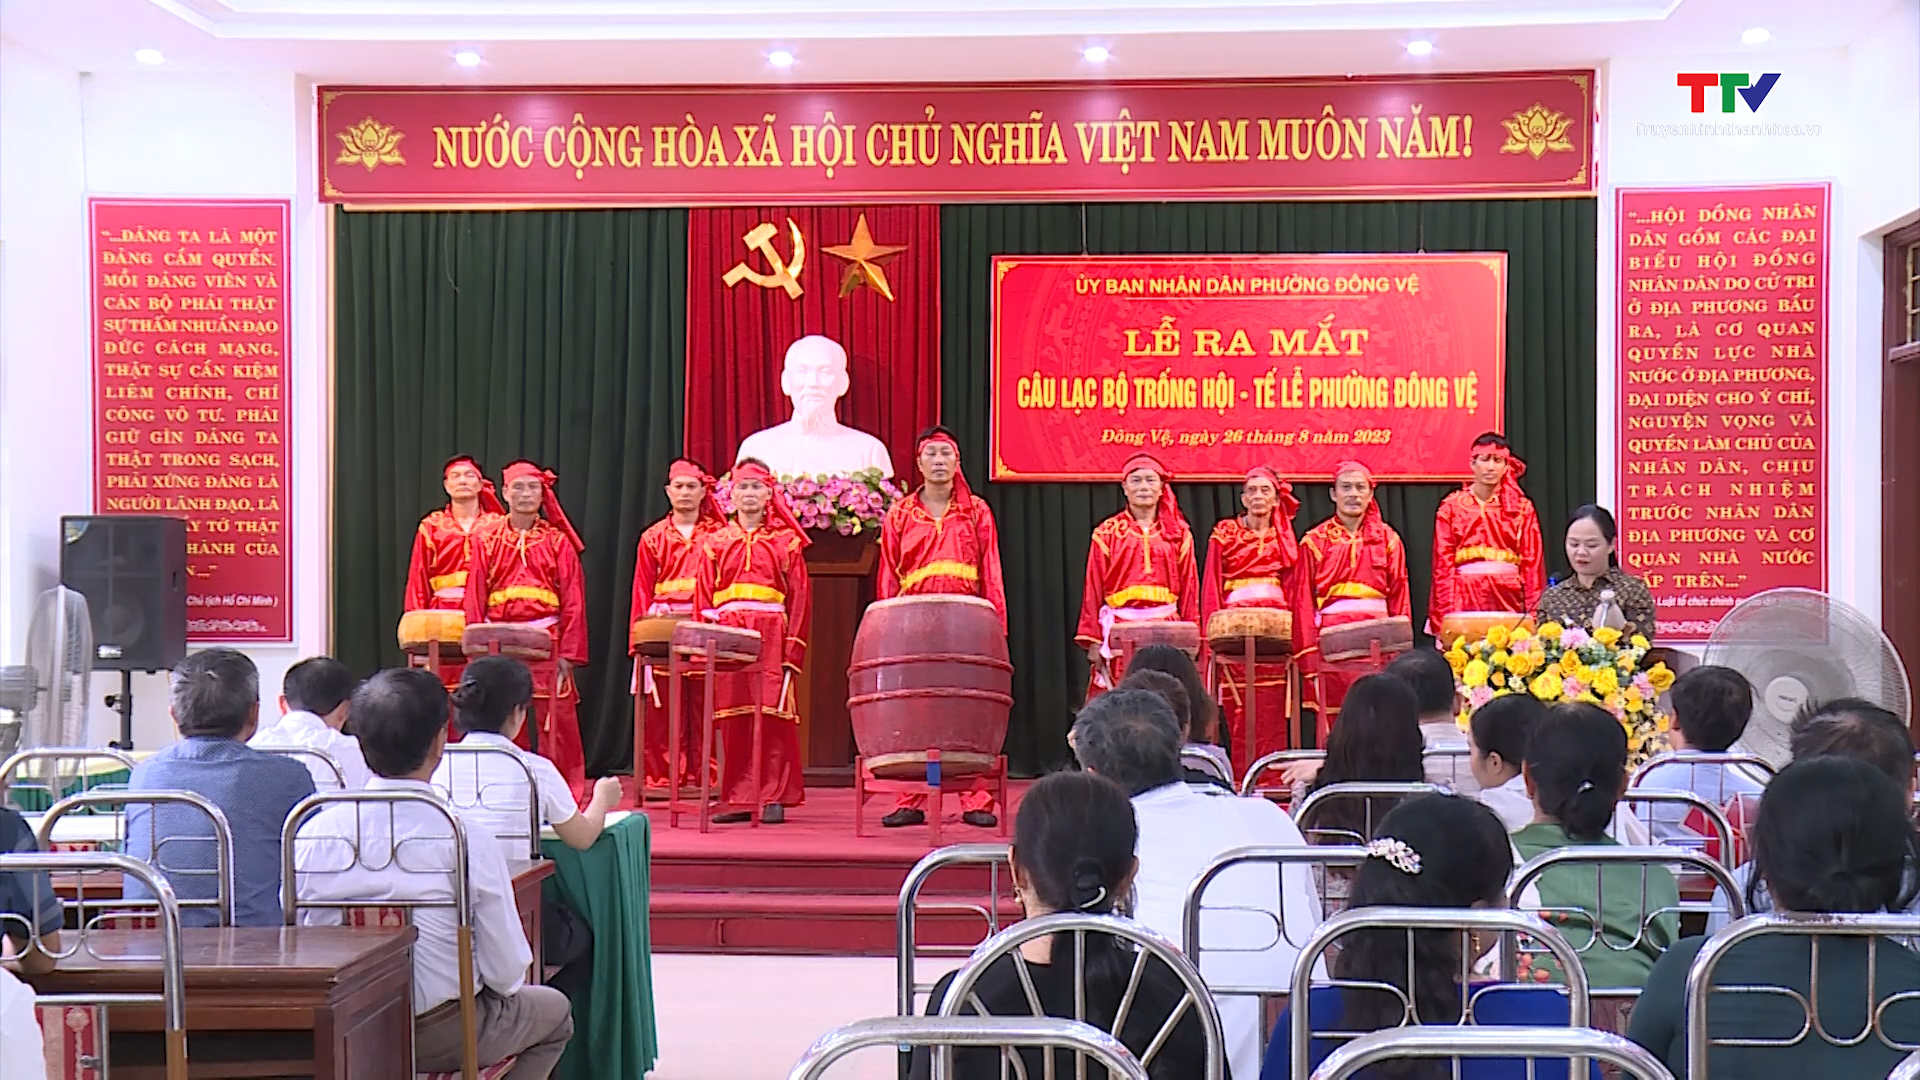 Tin tổng hợp hoạt động chính trị, kinh tế, văn hóa, xã hội trên địa bàn thành phố Thanh Hóa từ 23/8 - 30/8 - Ảnh 4.